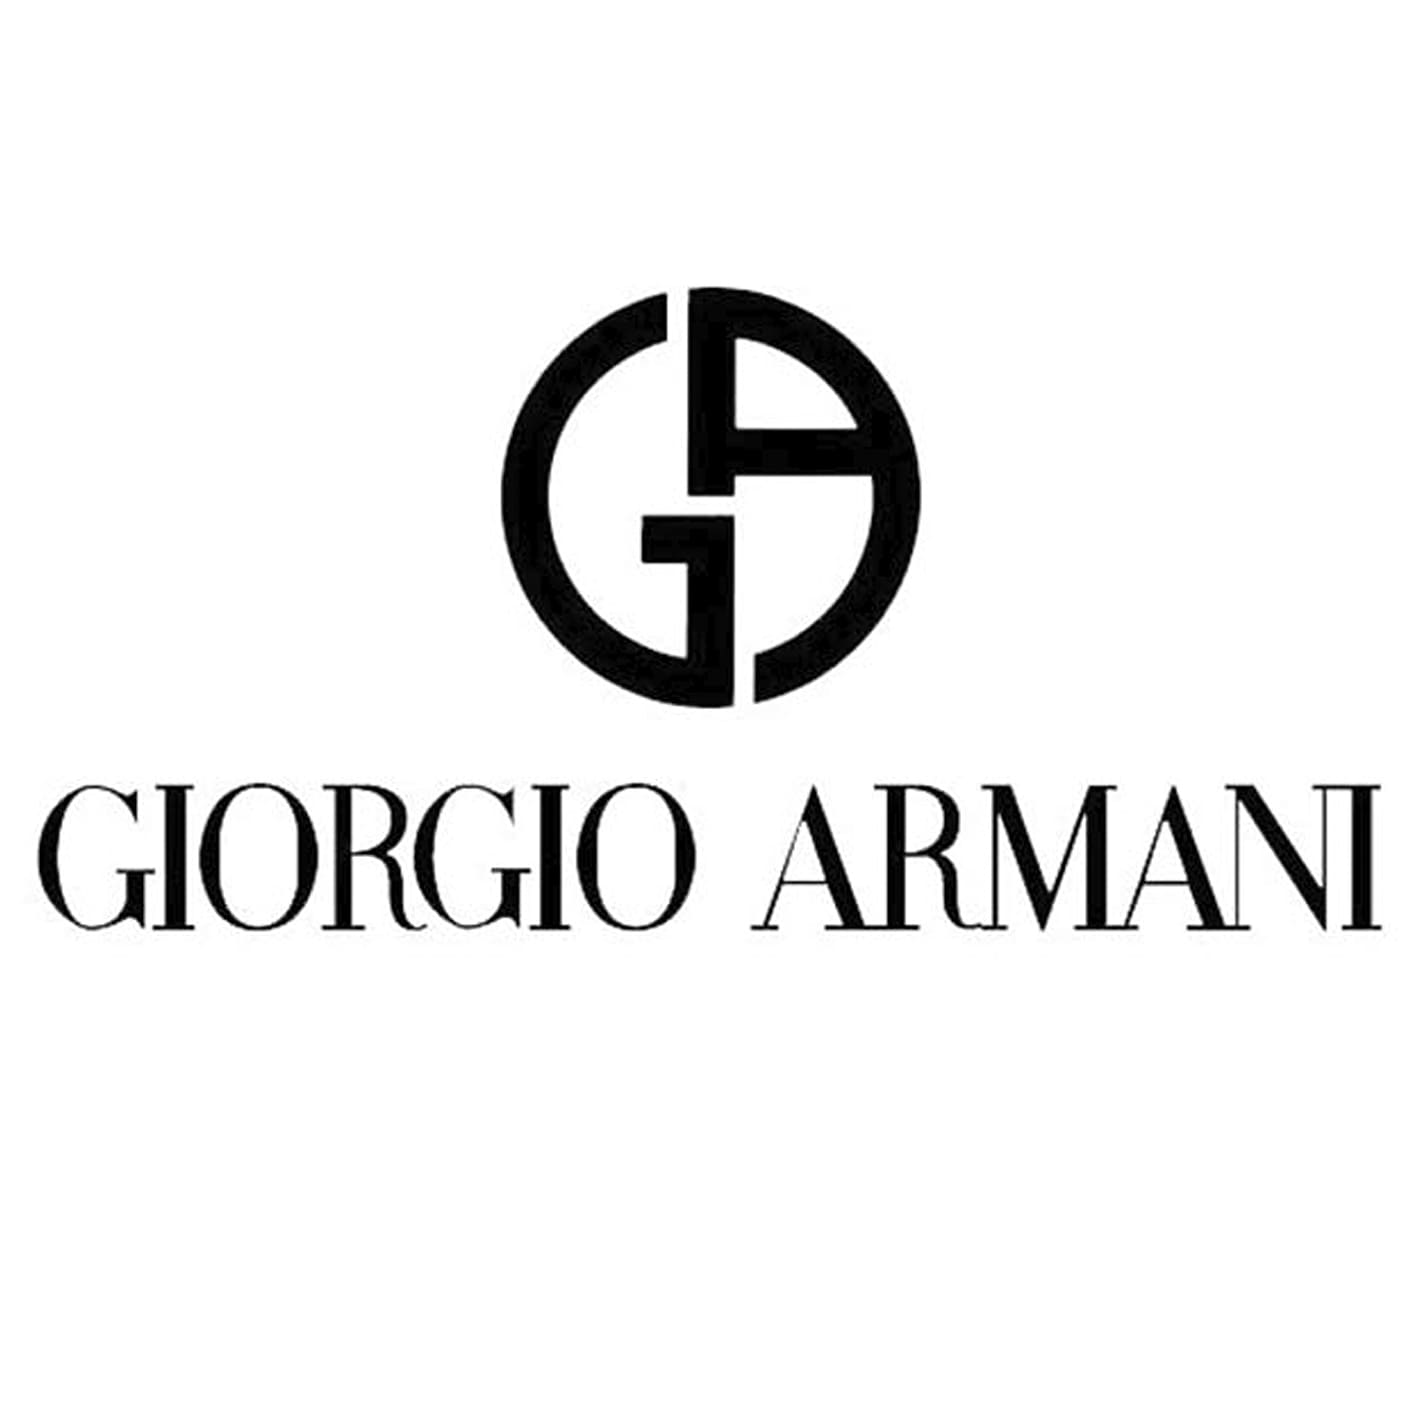 Aanzienlijk Elastisch Voorzieningen Giorgio Armani Logo and symbol, meaning, history, PNG, brand